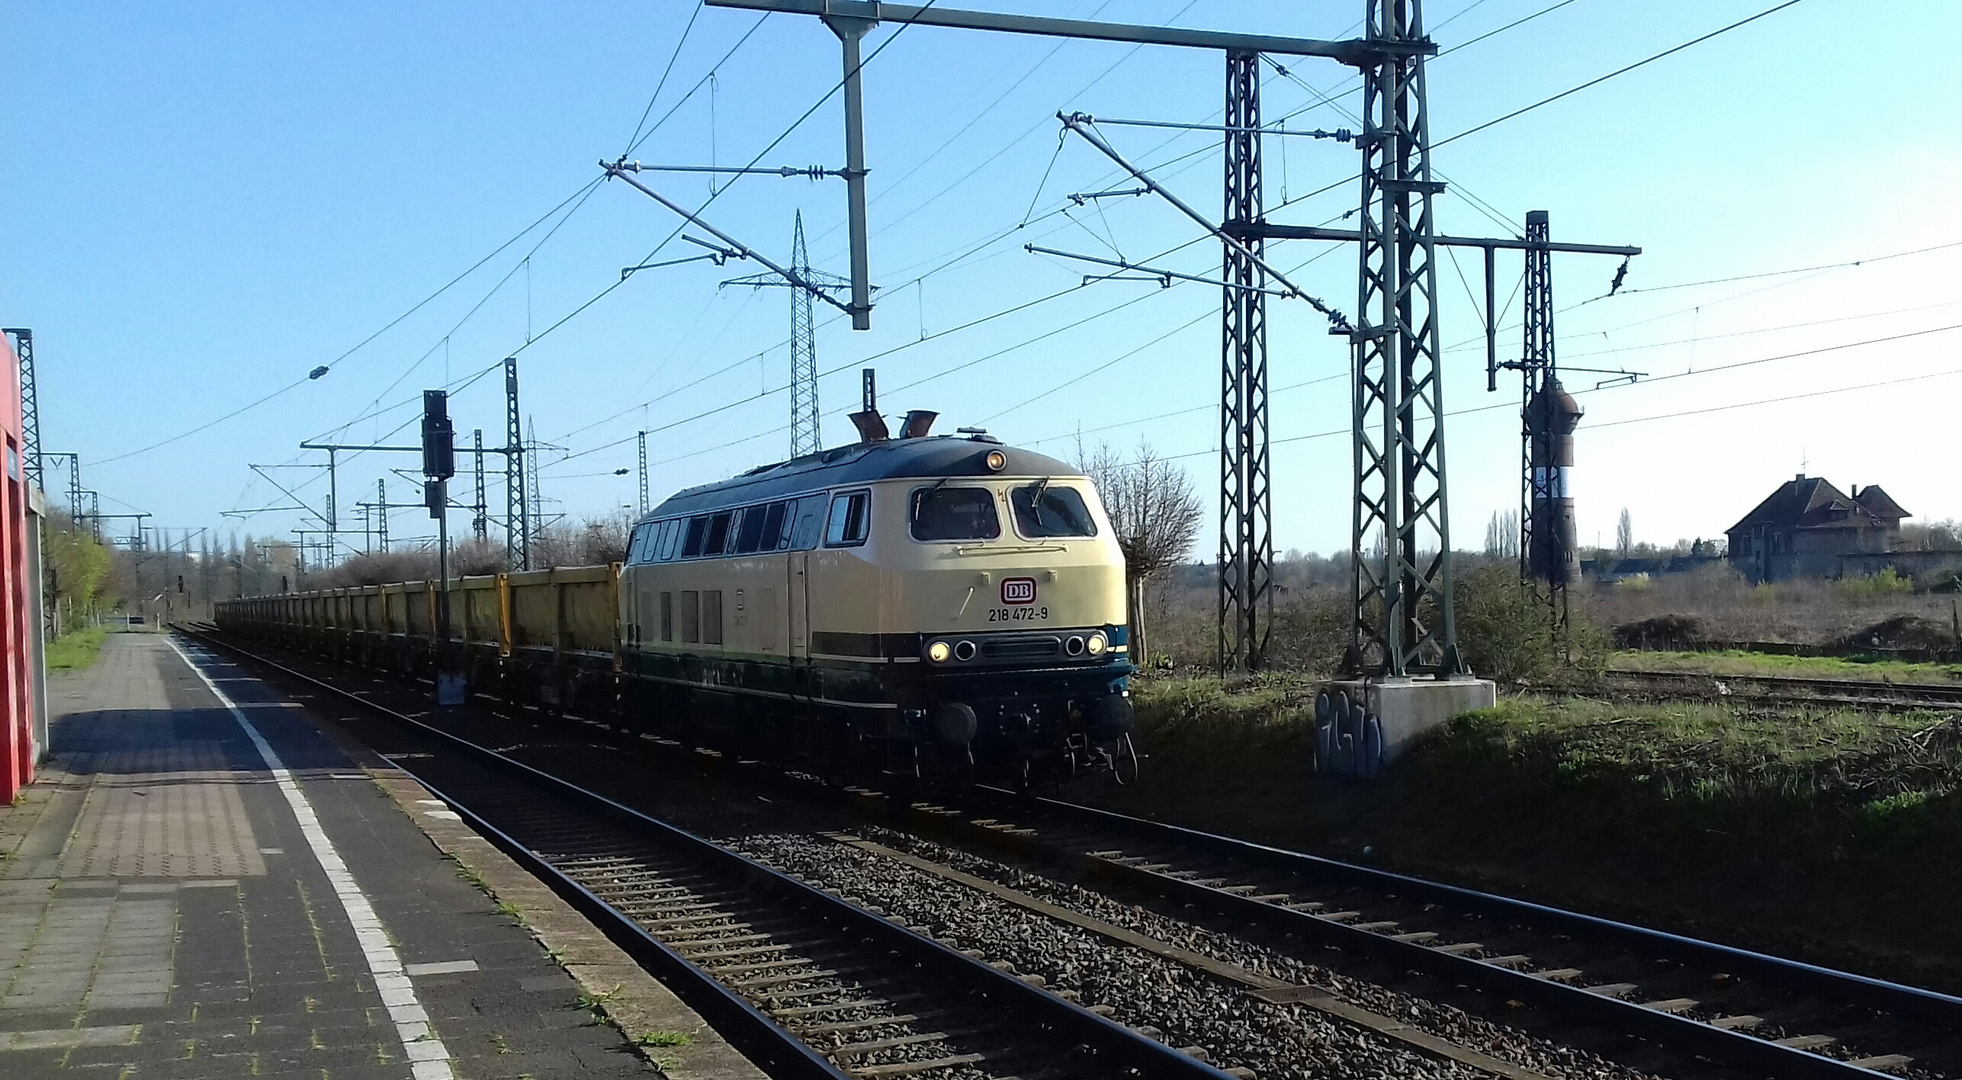 218 472 von Railsystems am 29.03.2019 durch Duisburg-Wedau Richtung Nord .